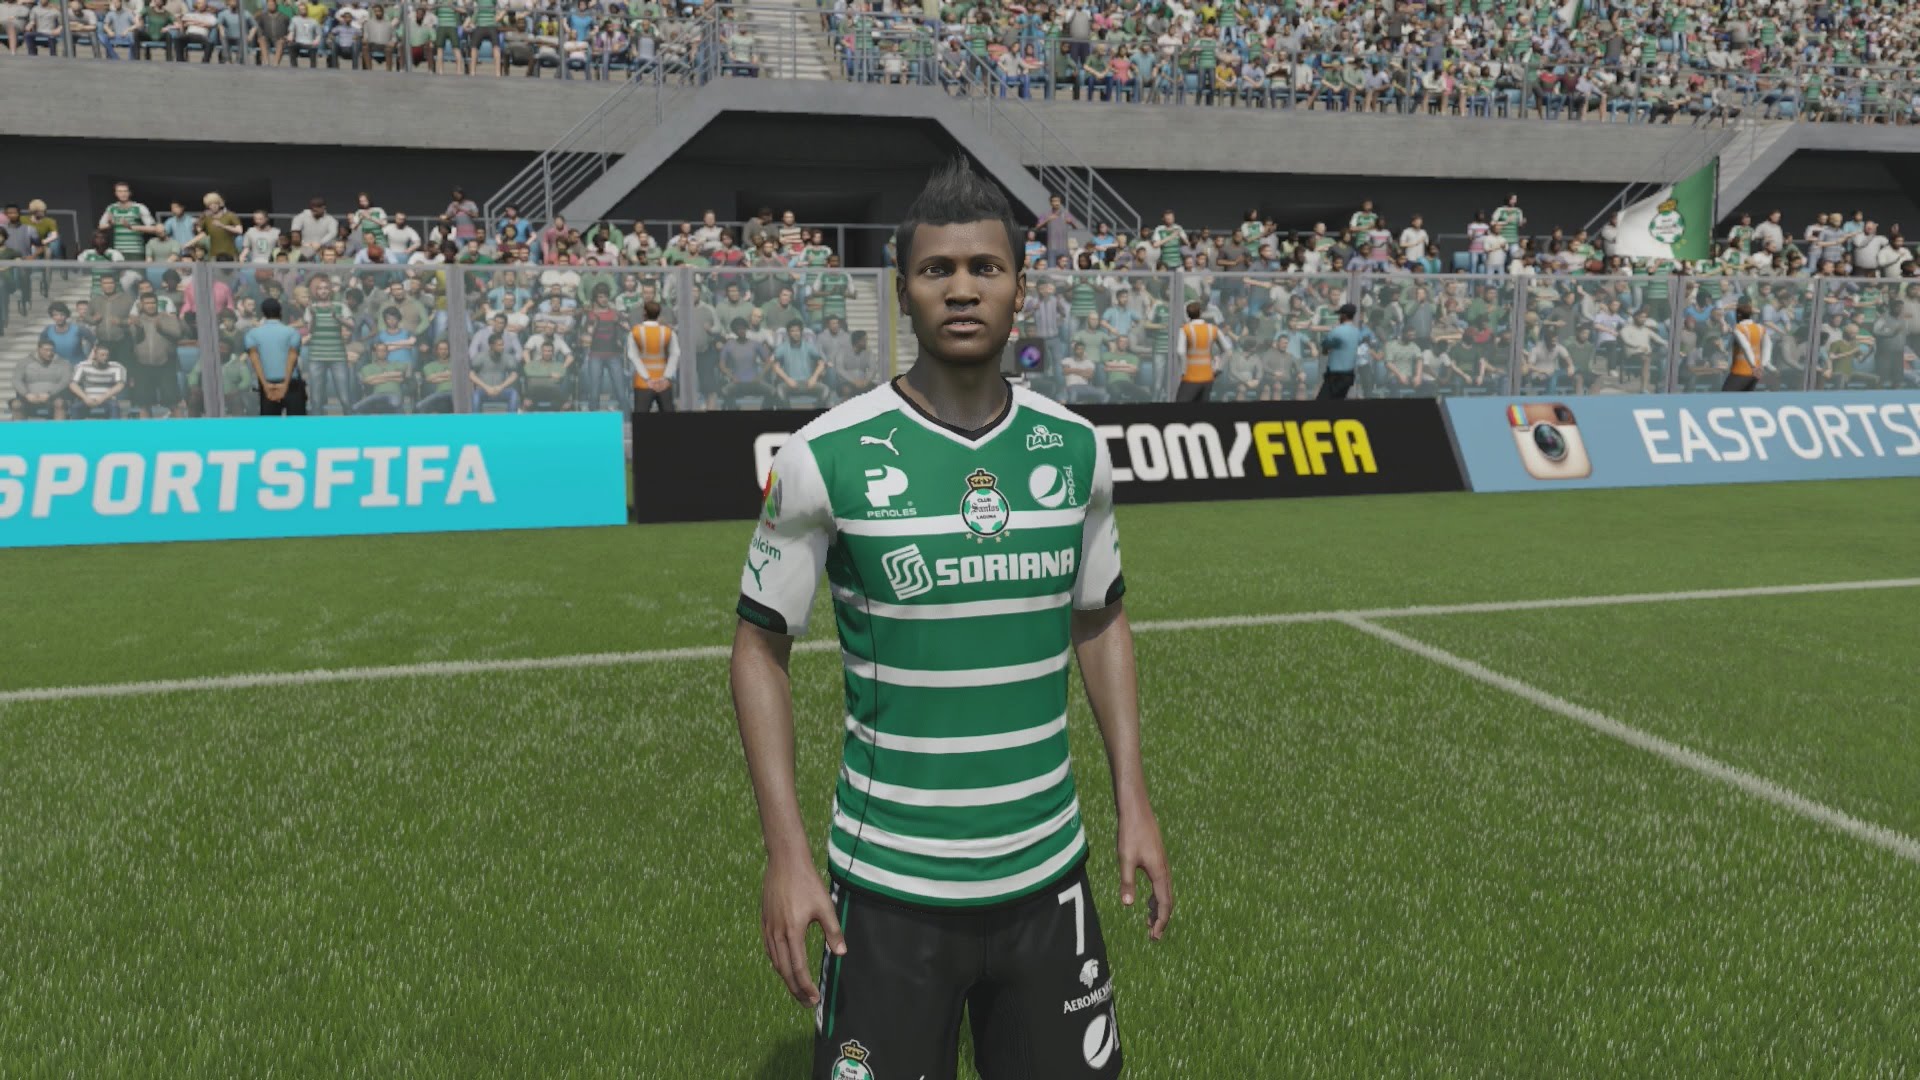 FIFA 15 - Santos Laguna Player Faces - Next Gen Gameplay 1080p